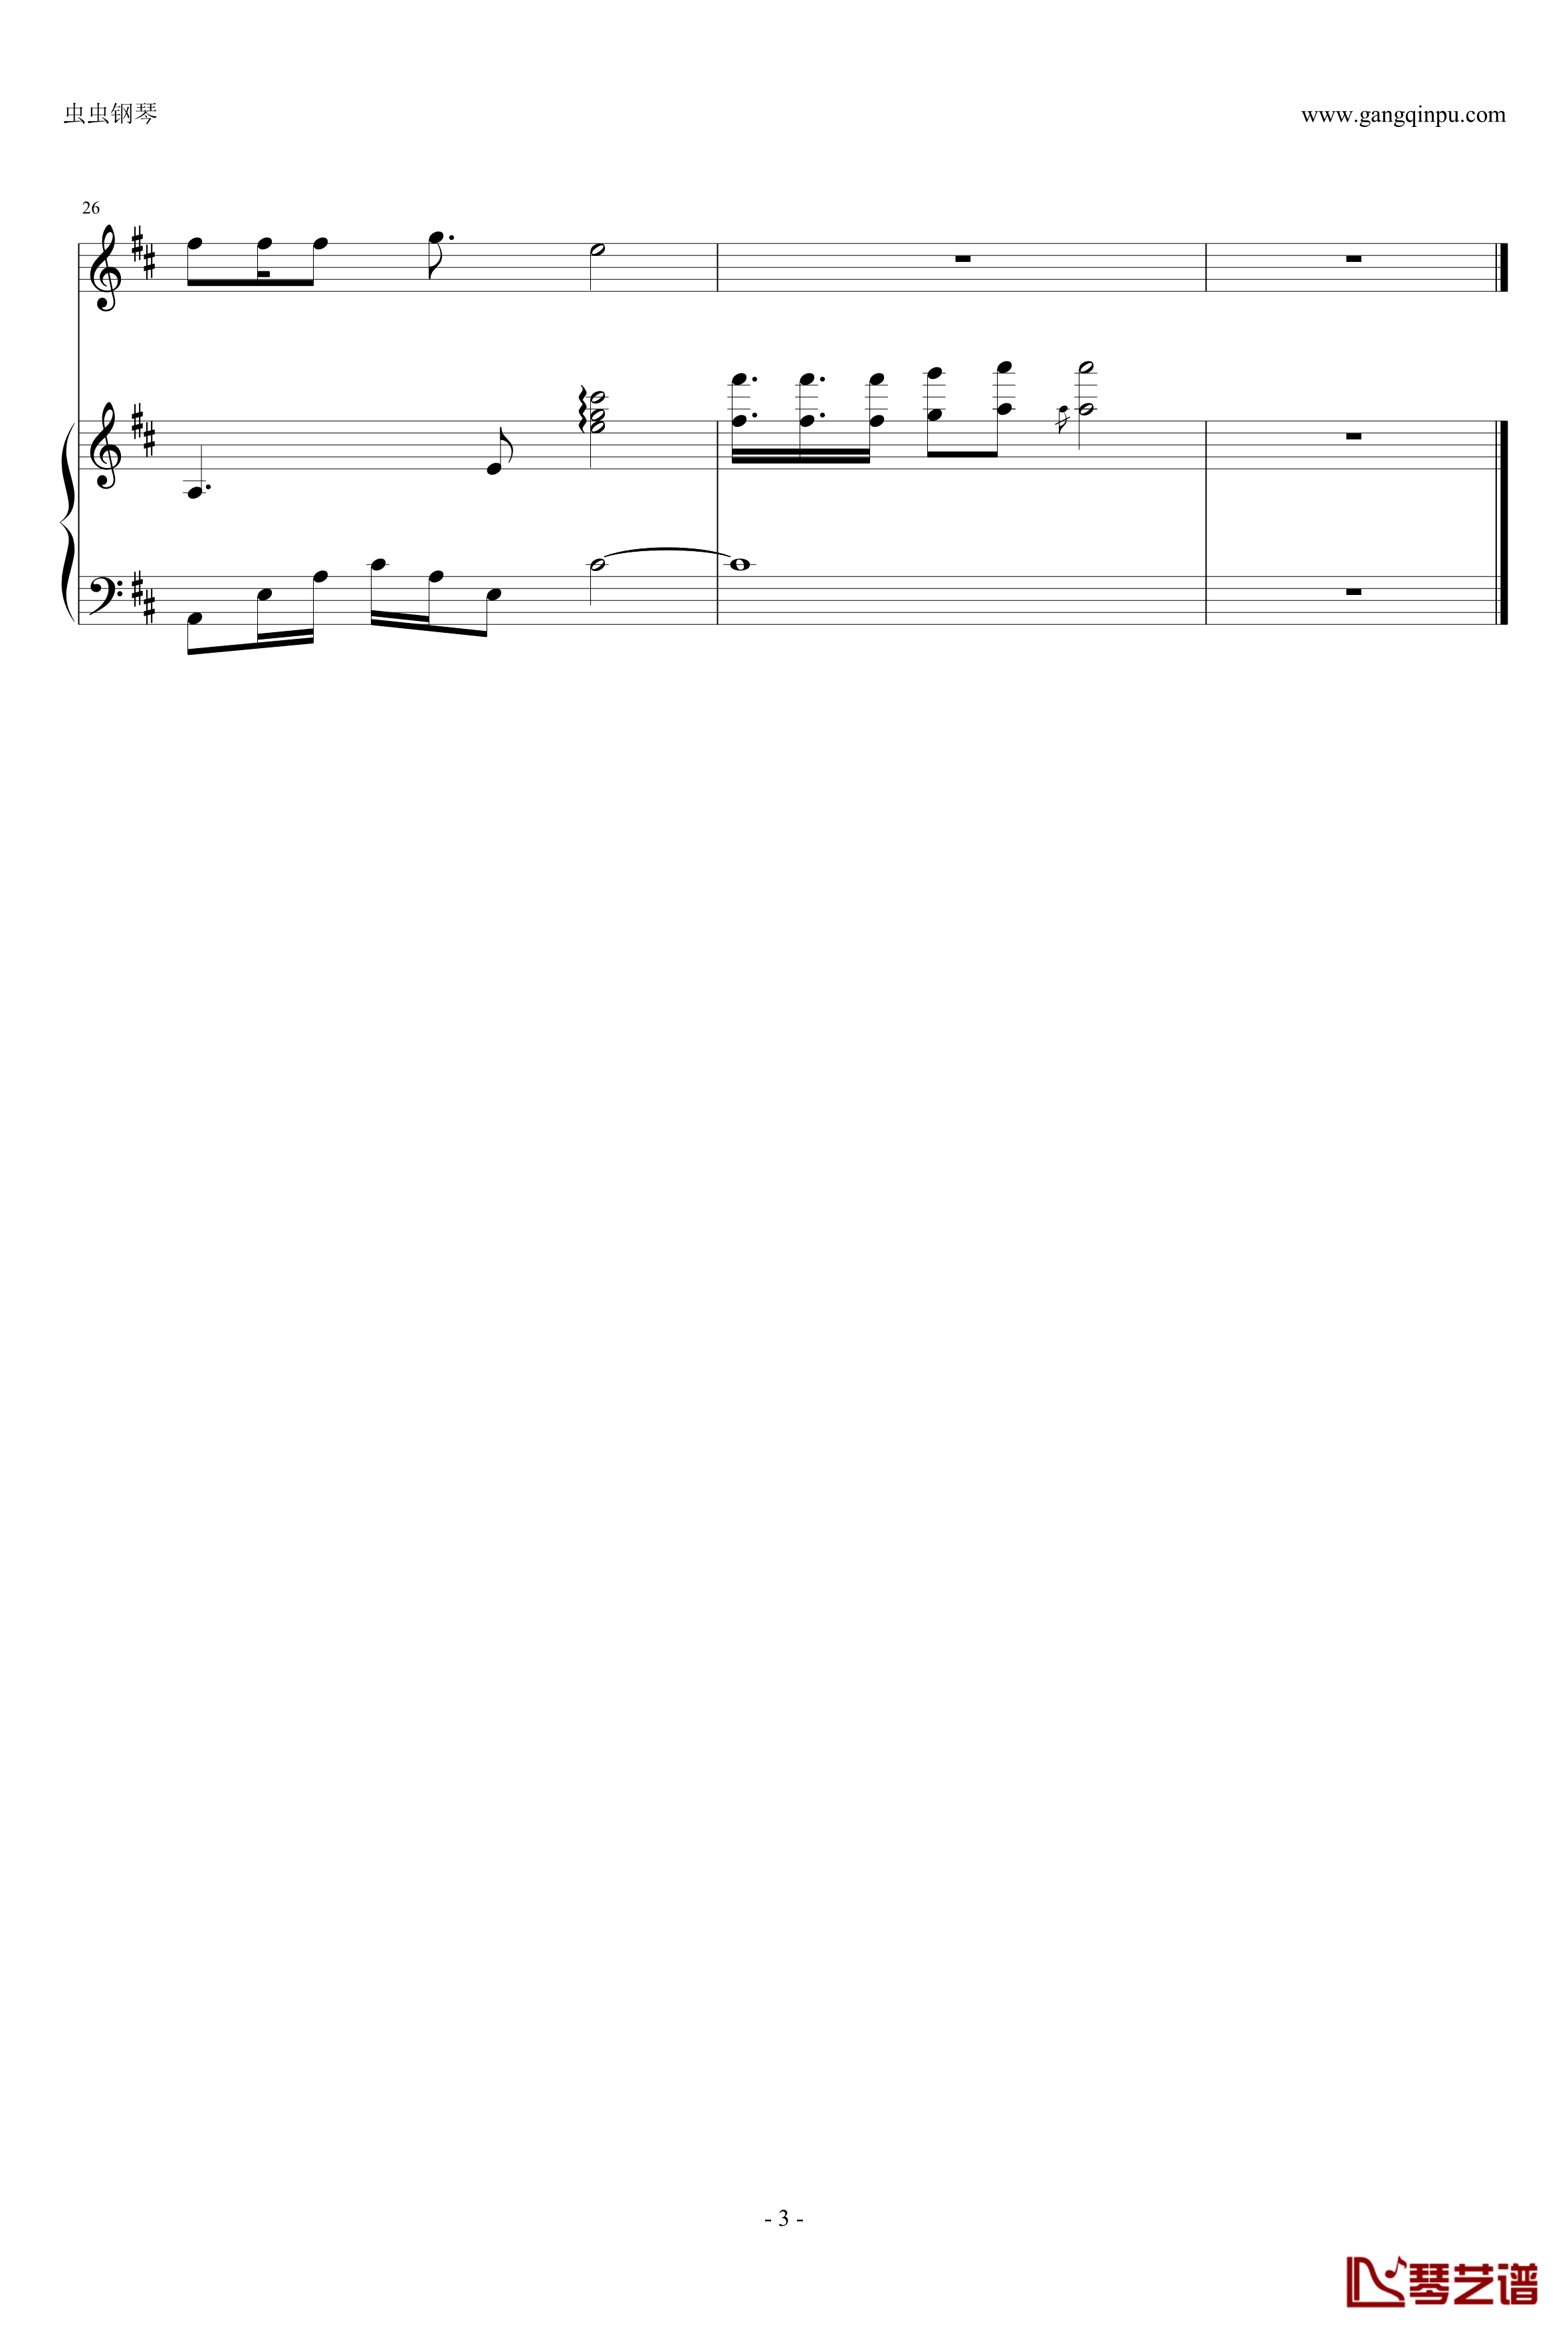 天梯钢琴谱-弹唱版-C-allstar3